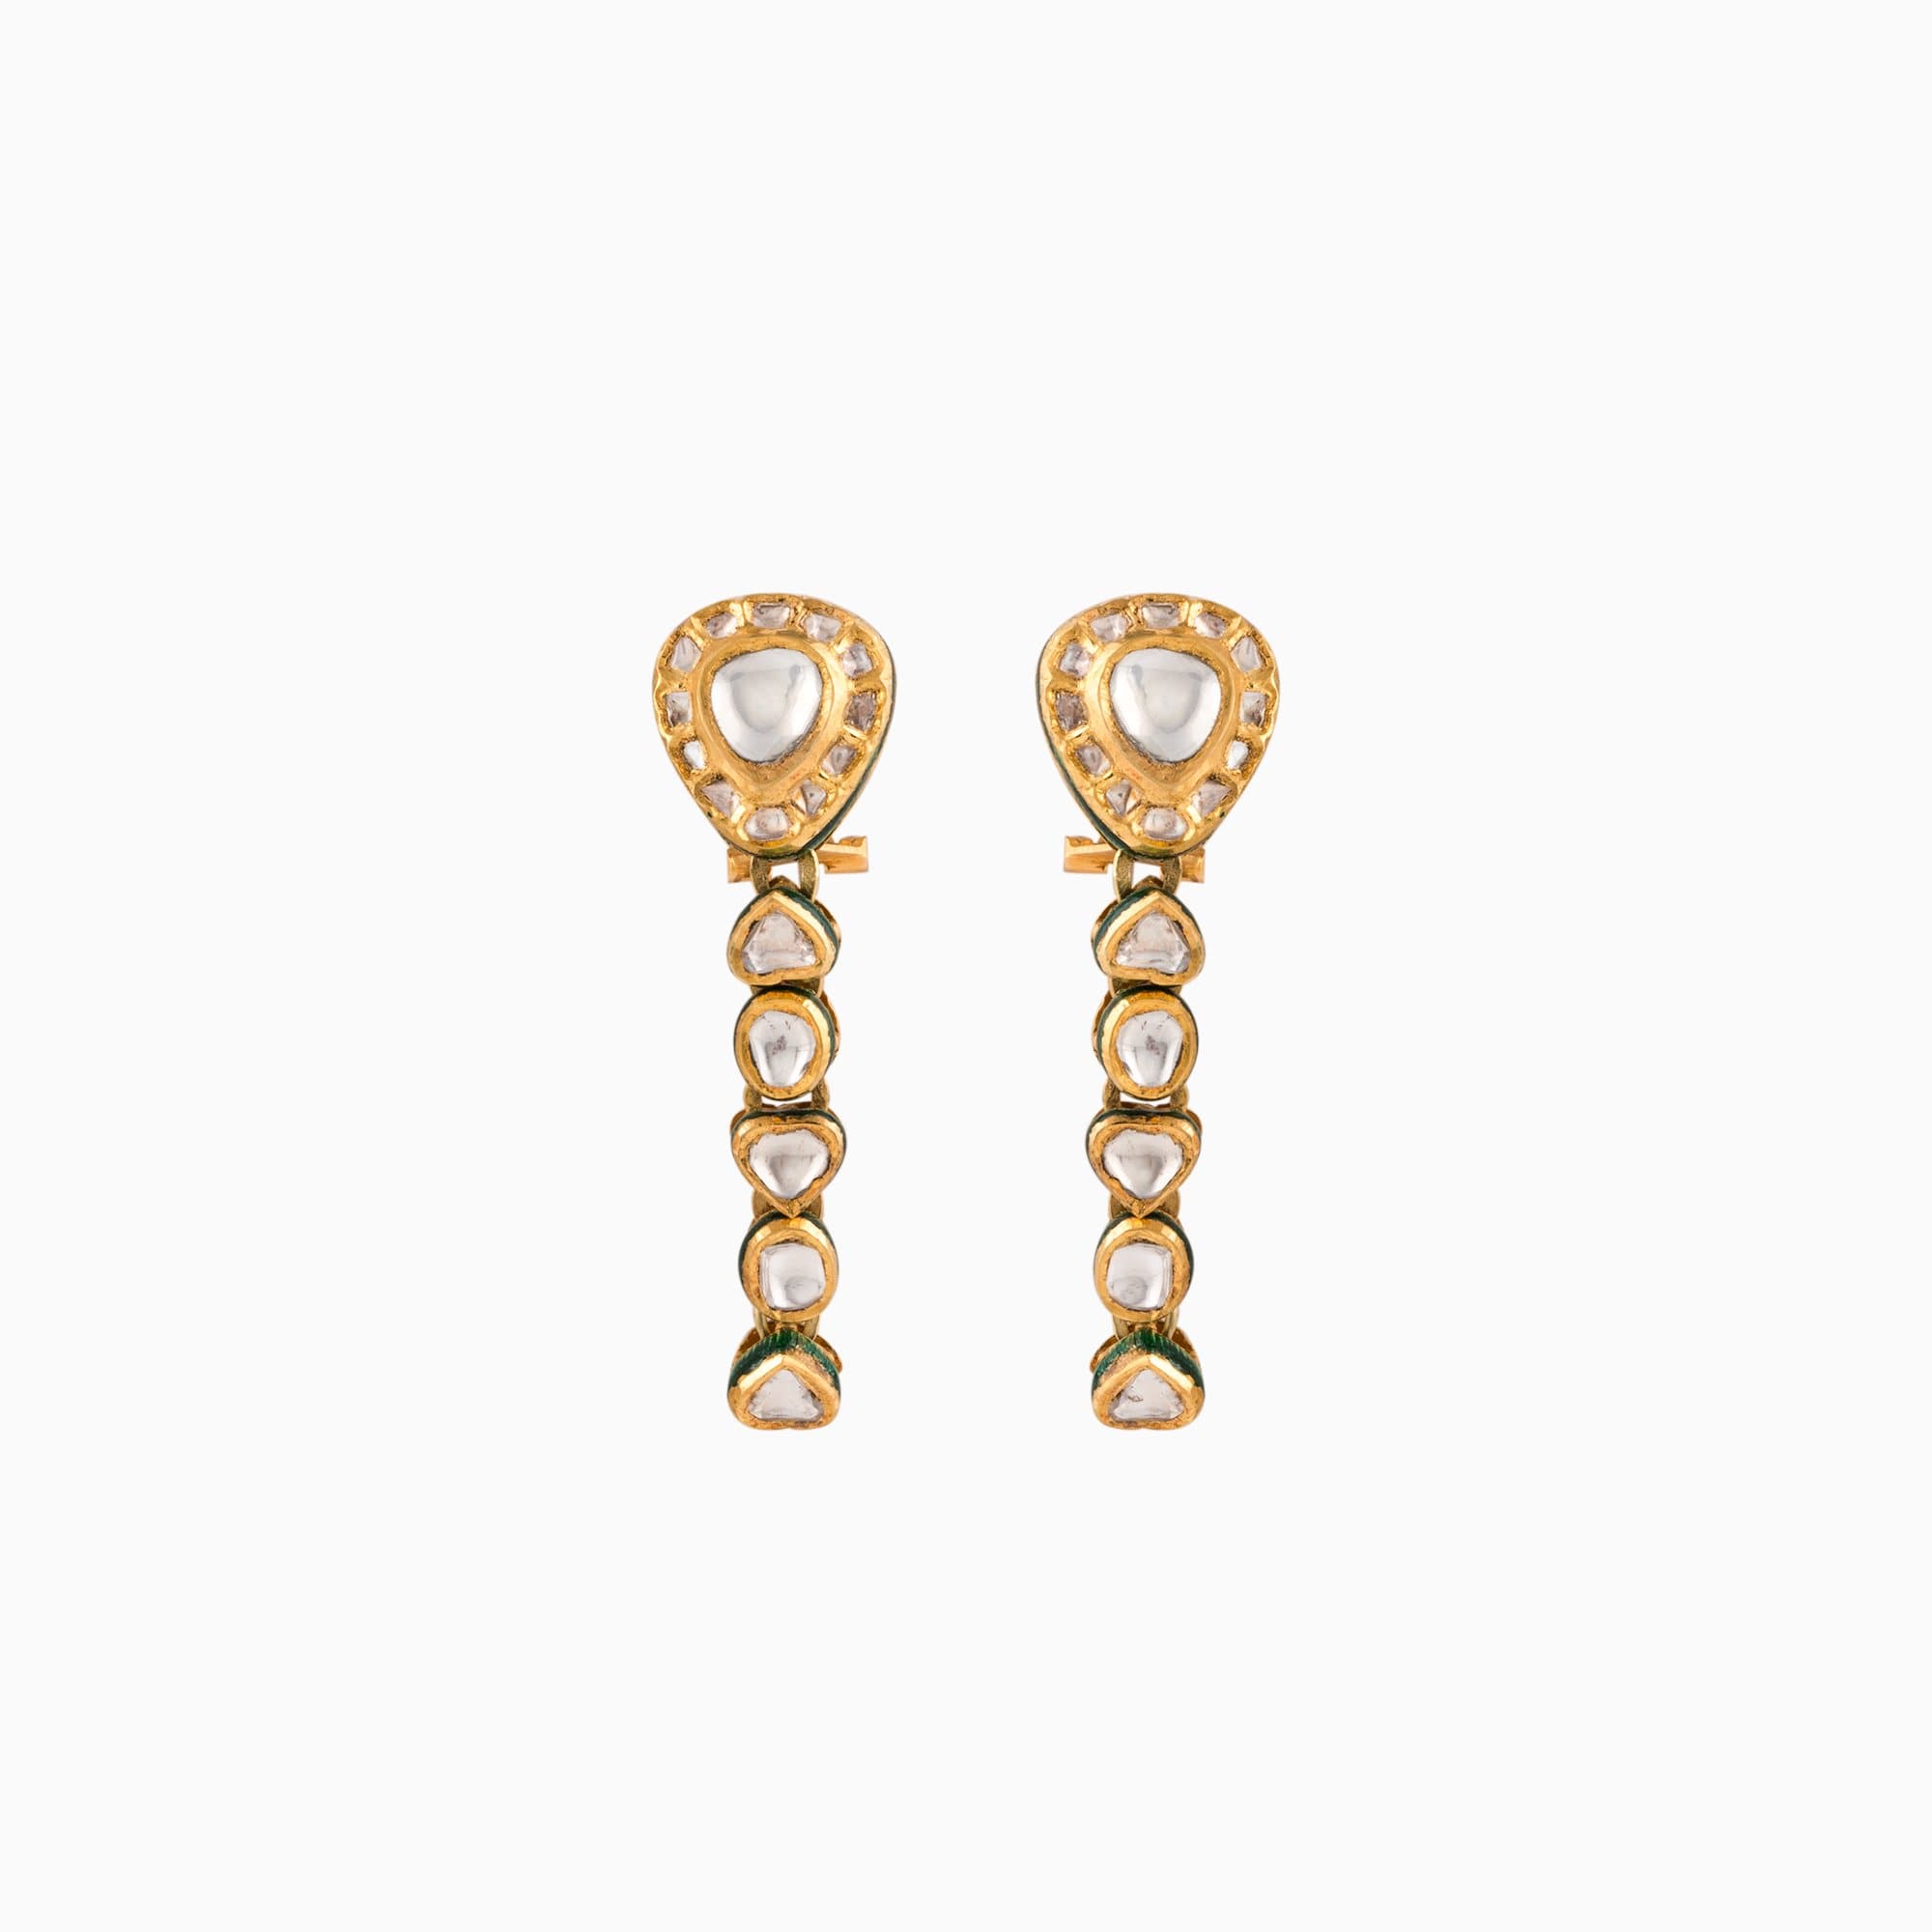 22K Gold Jadau Earring Pair Handwork Enamel Ekposta with Diamond Polki - KMNE2828